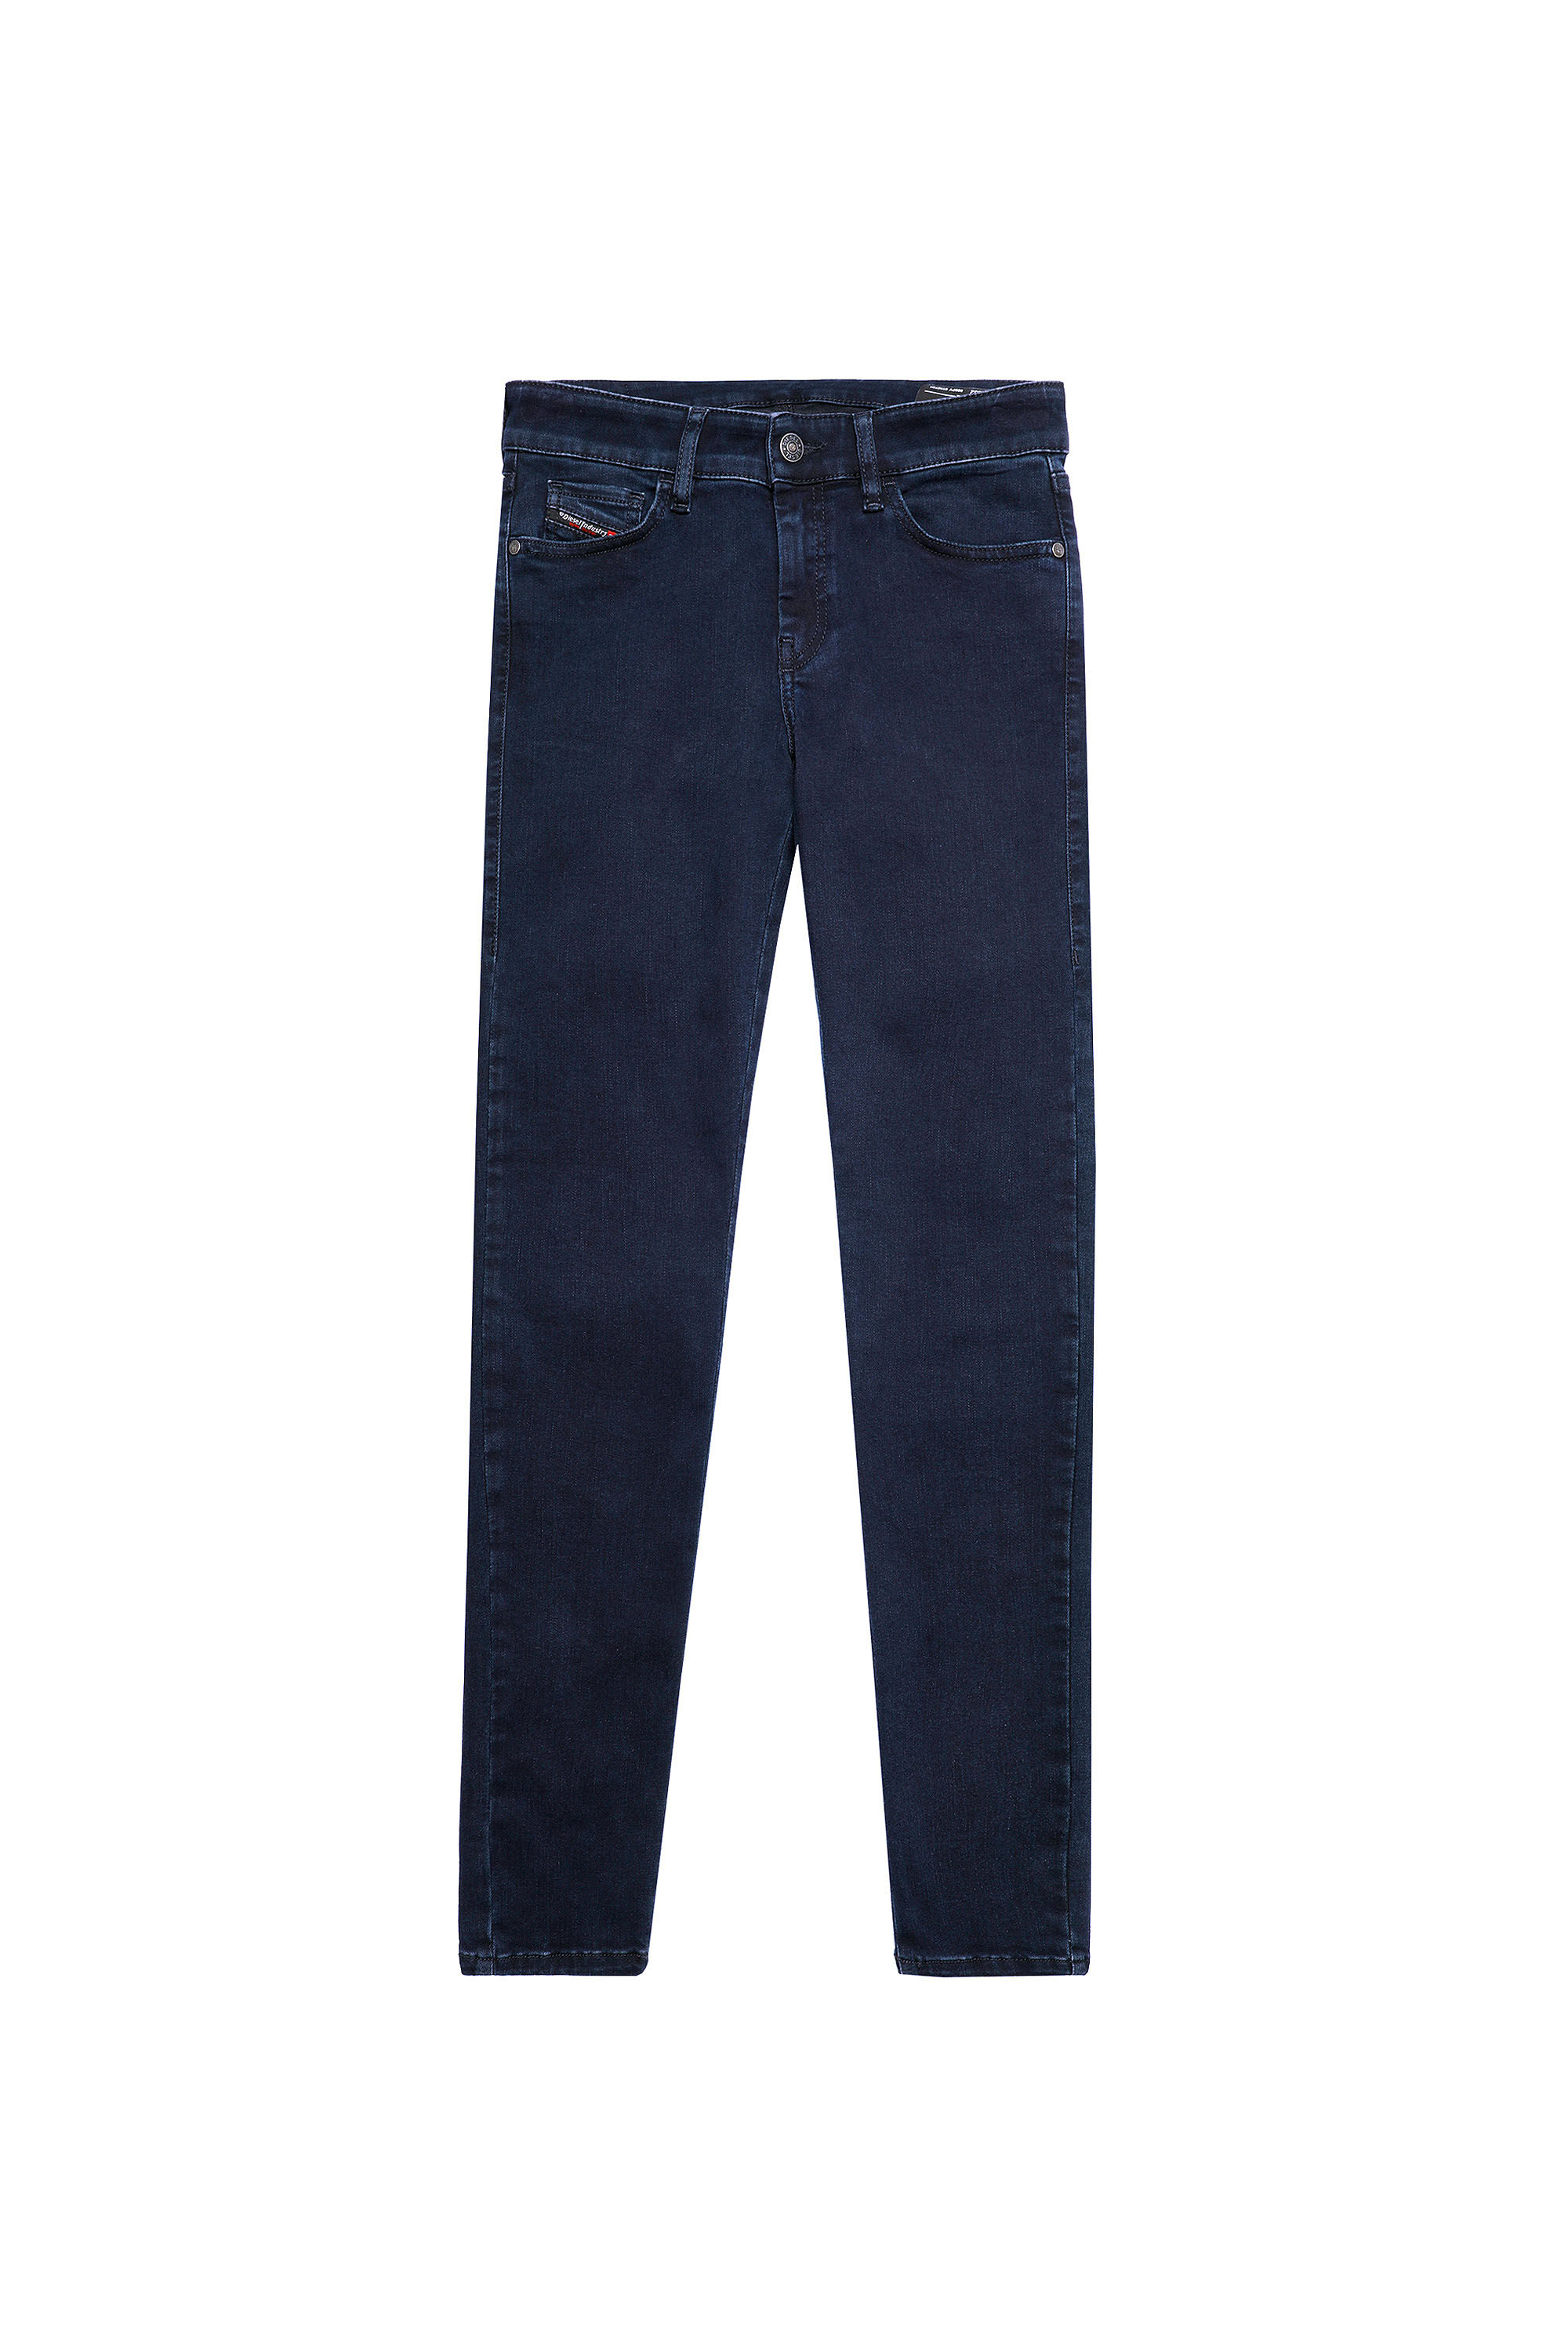 Diesel - Slandy Skinny Jeans 009PV, Dark Blue - Image 2